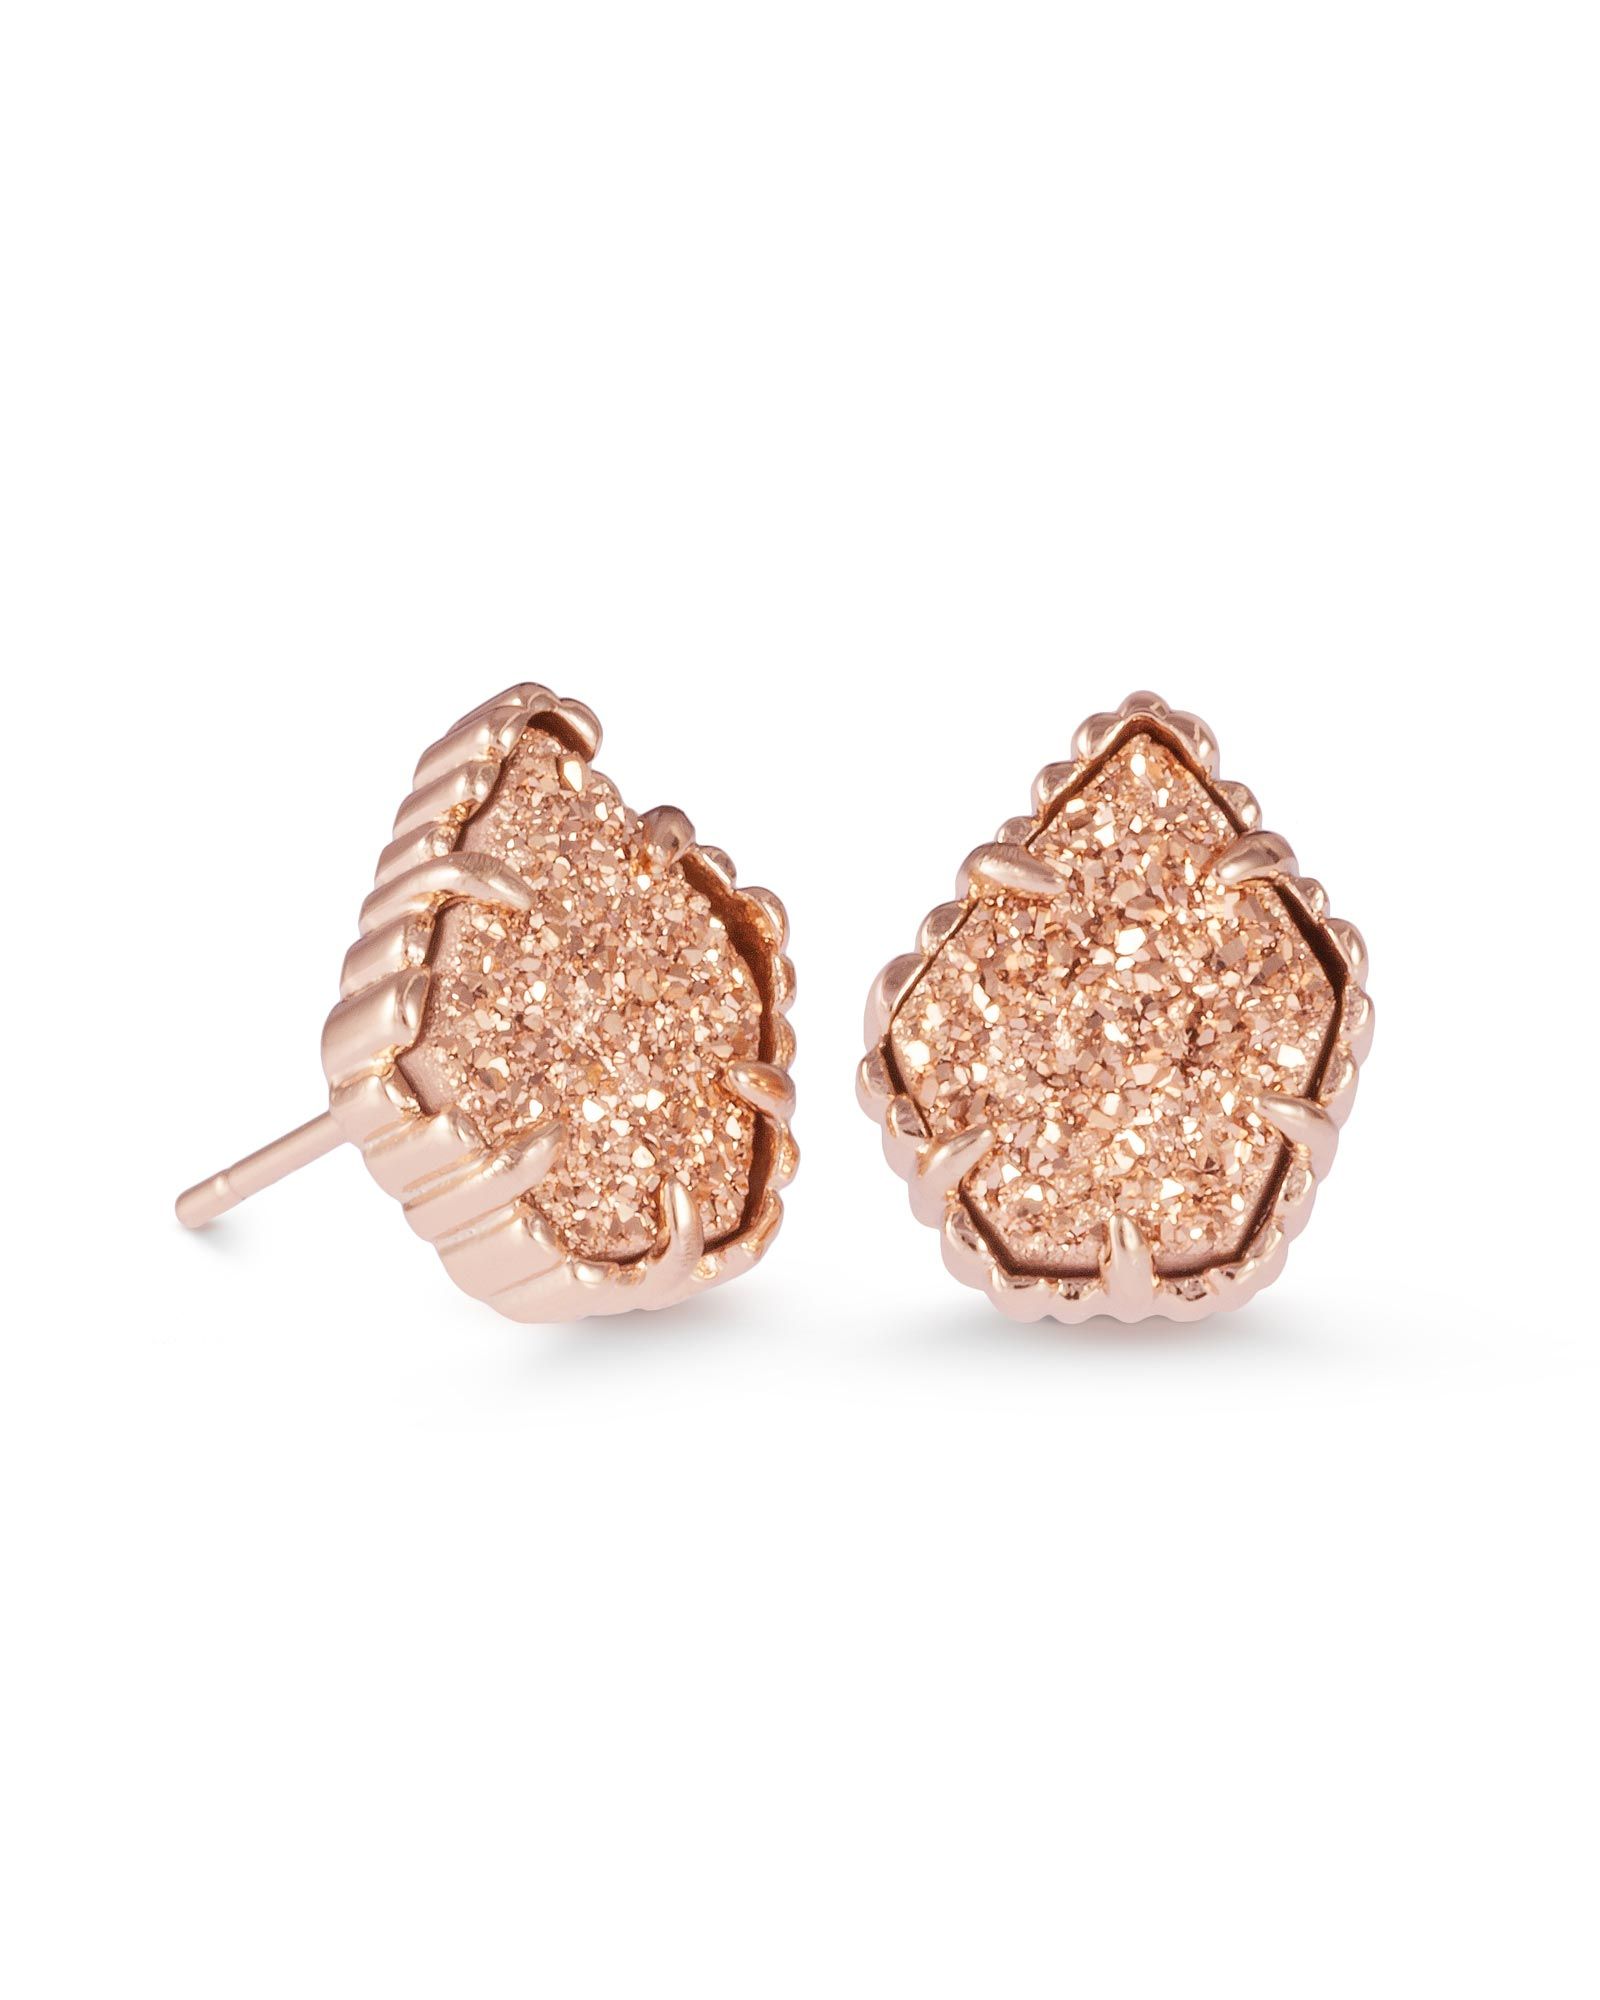 Tessa Stud Earrings in Rose Gold Drusy | Kendra Scott